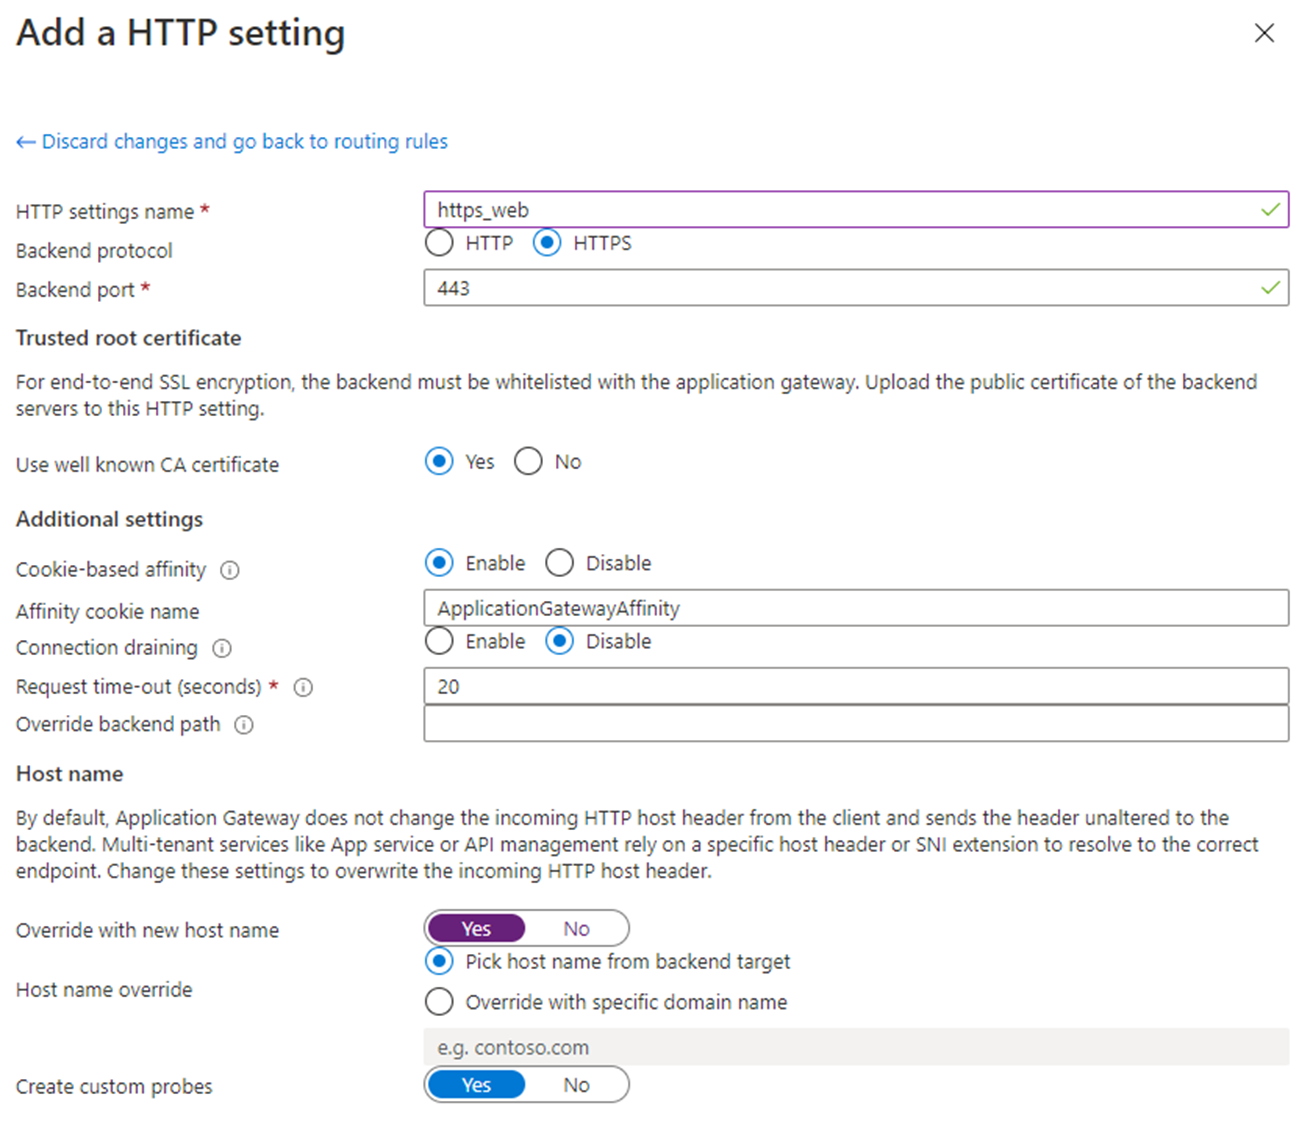 HTTP settingss